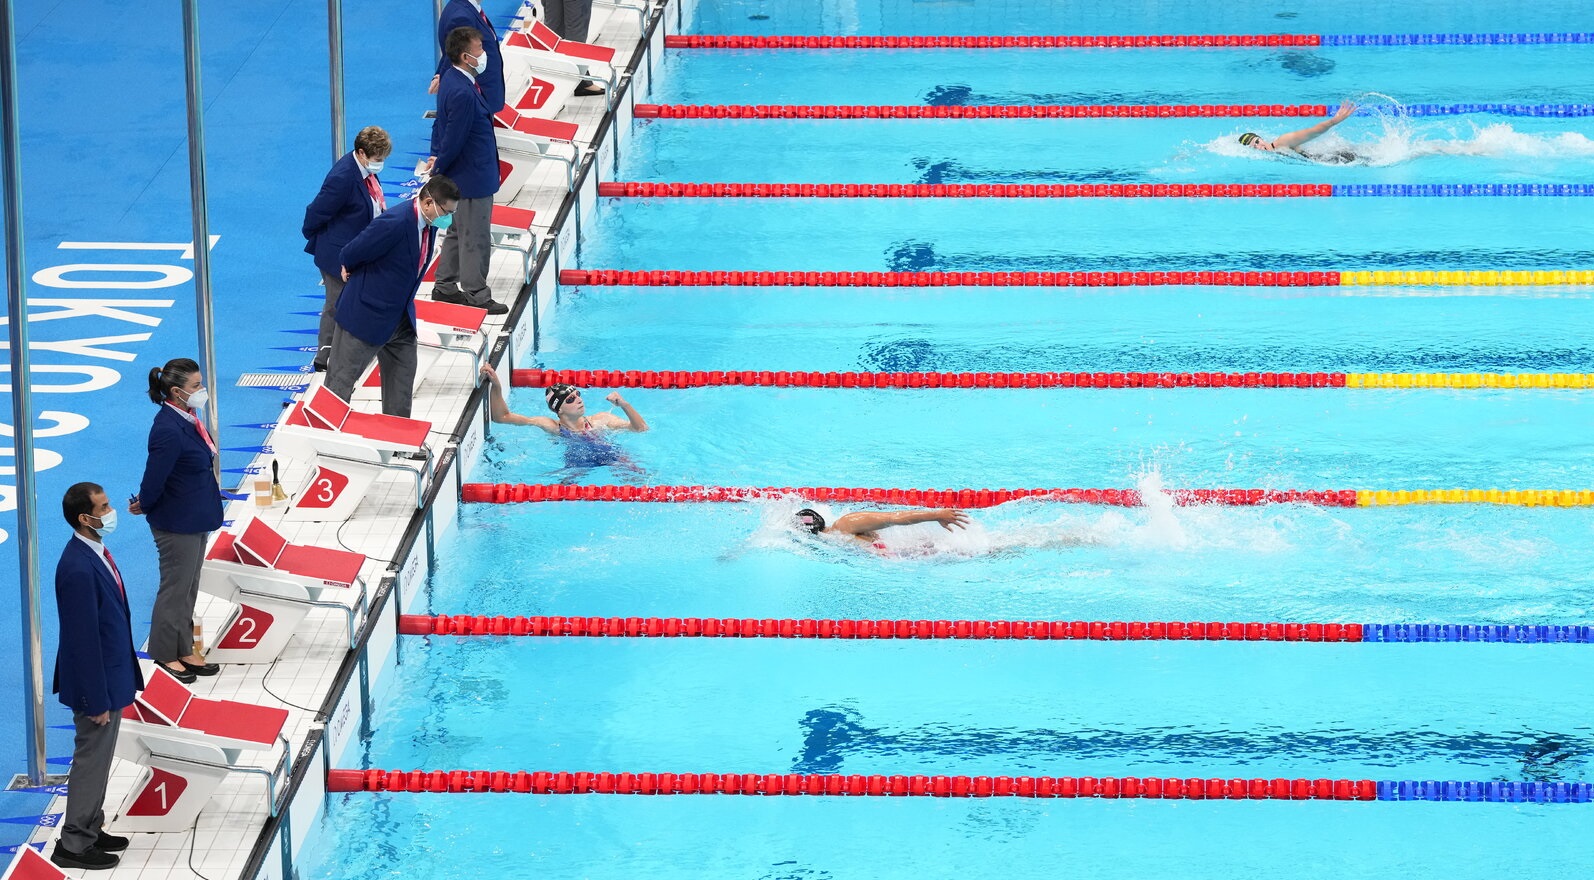 Trong thi đấu, mỗi vận động viên sẽ có riêng cho mình một làn bơi để bơiv